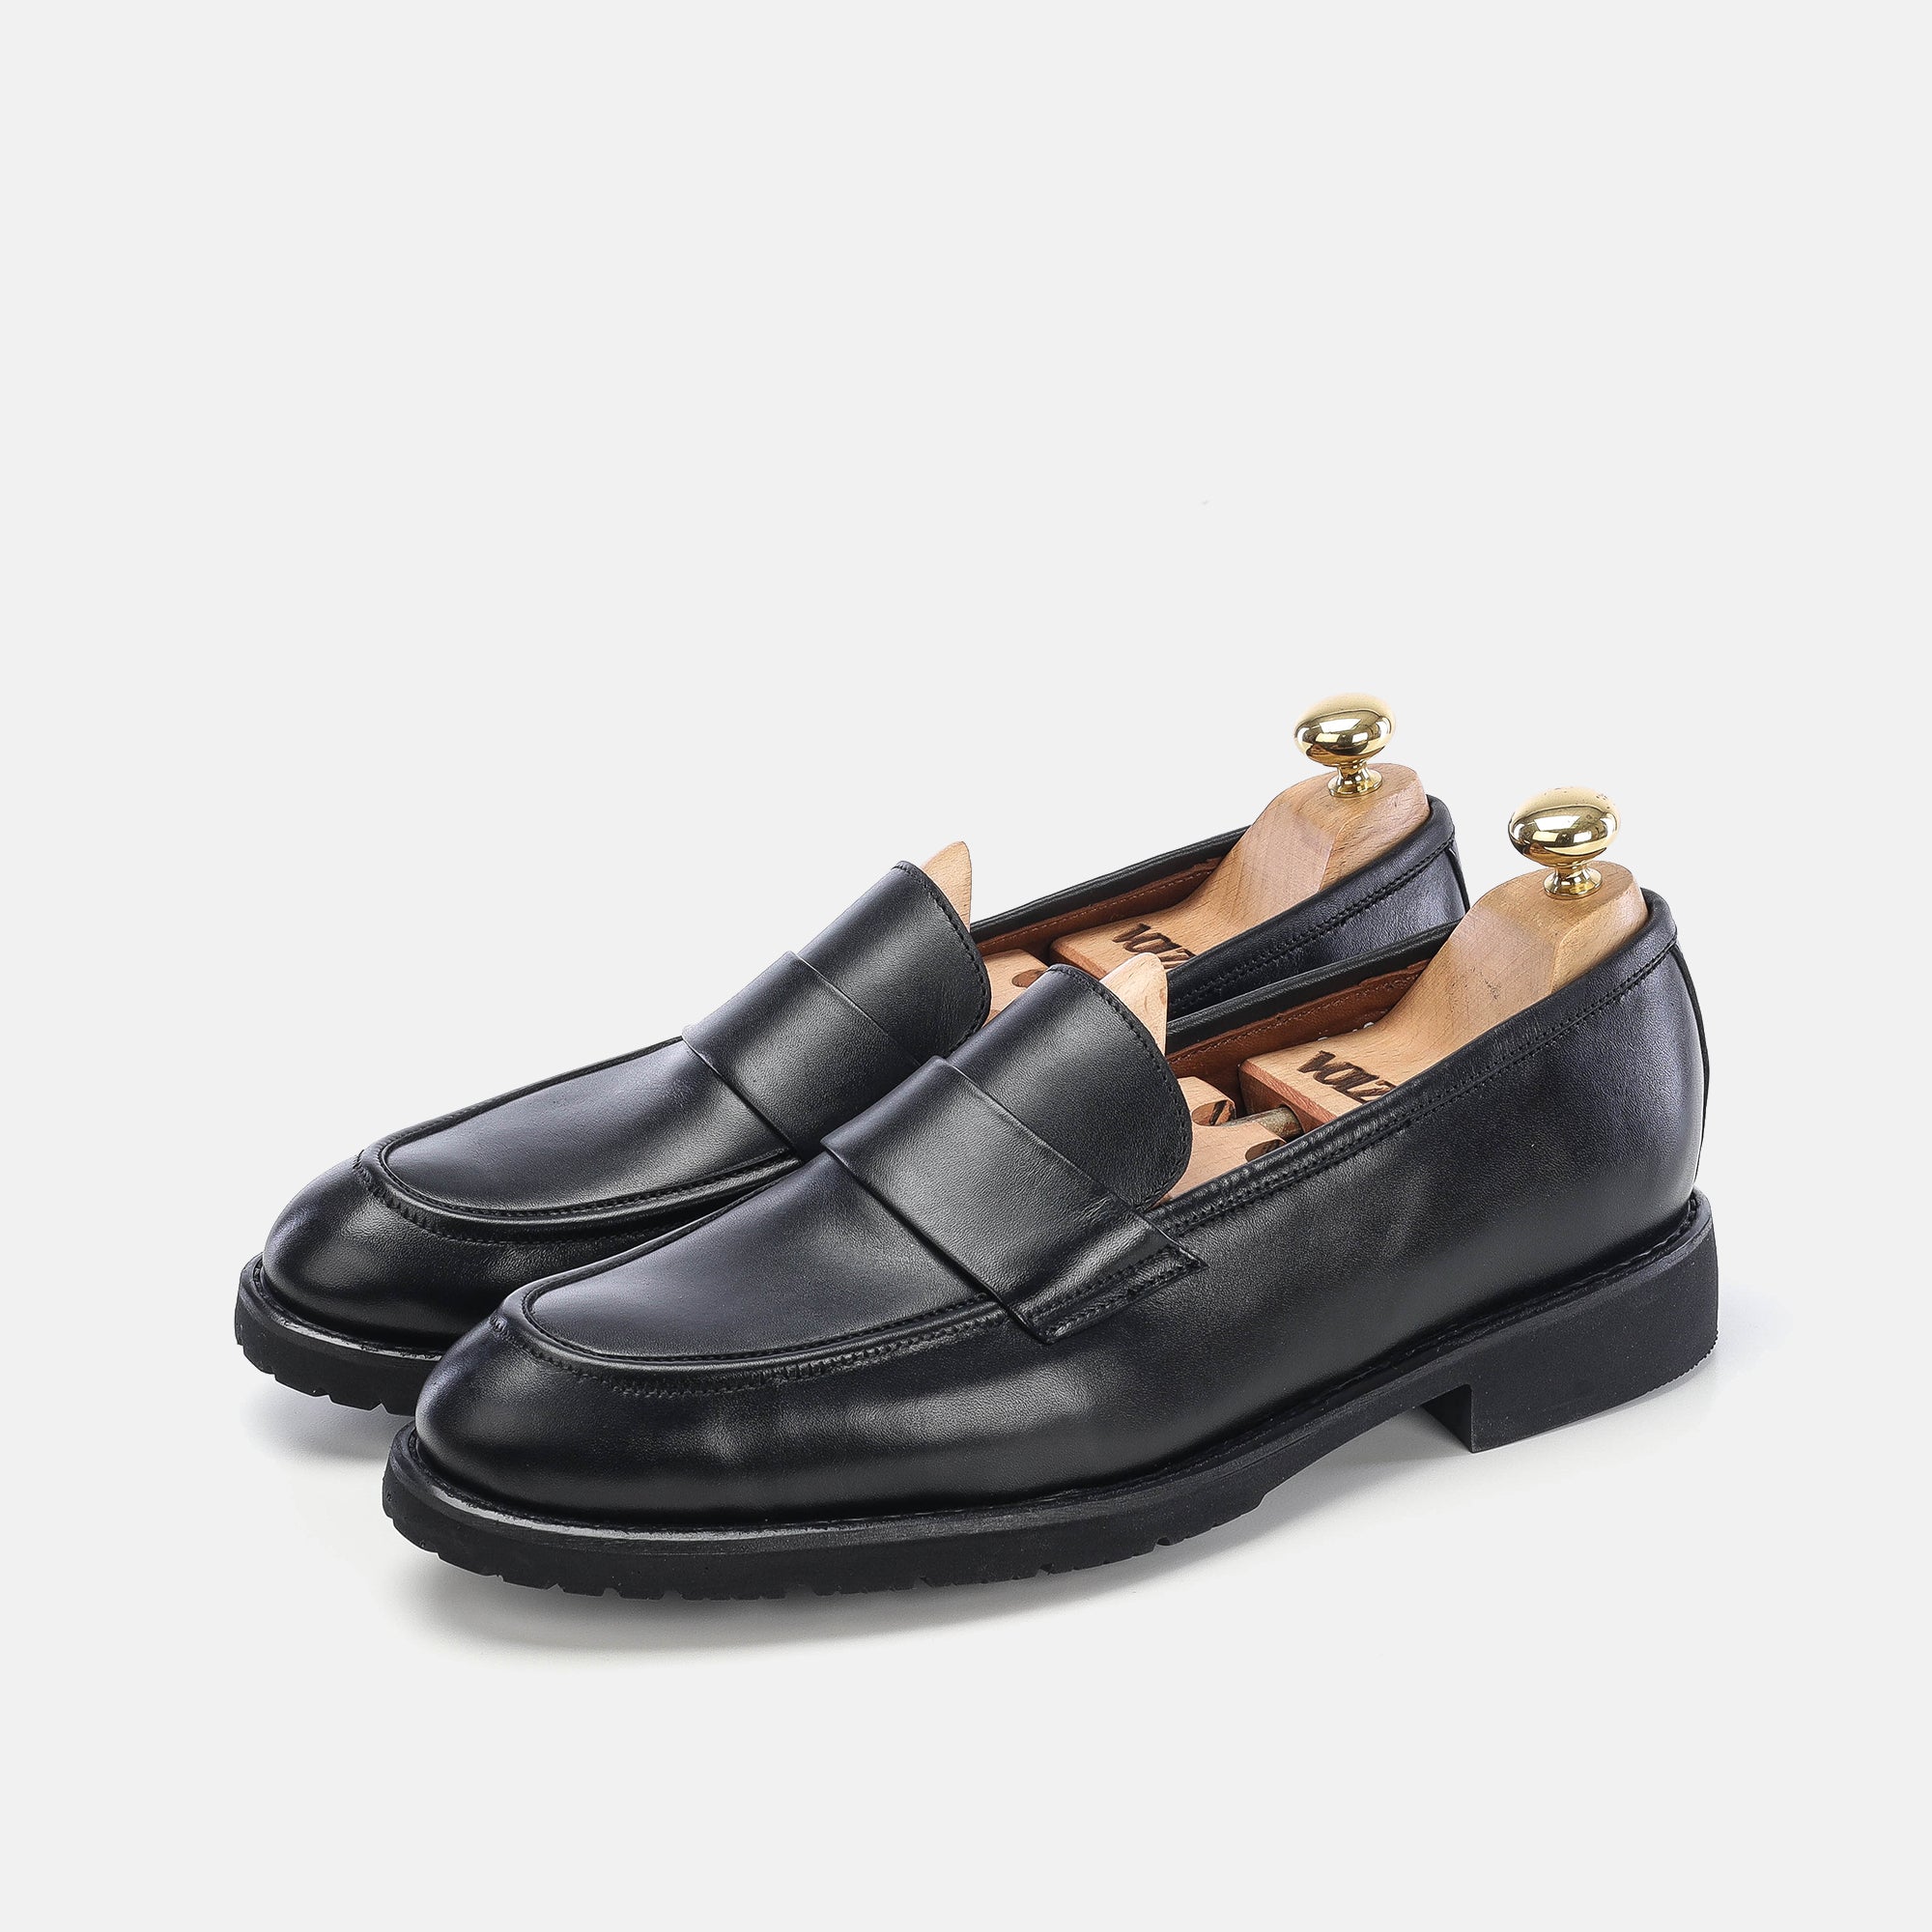 '''5162 chaussure cuir noir